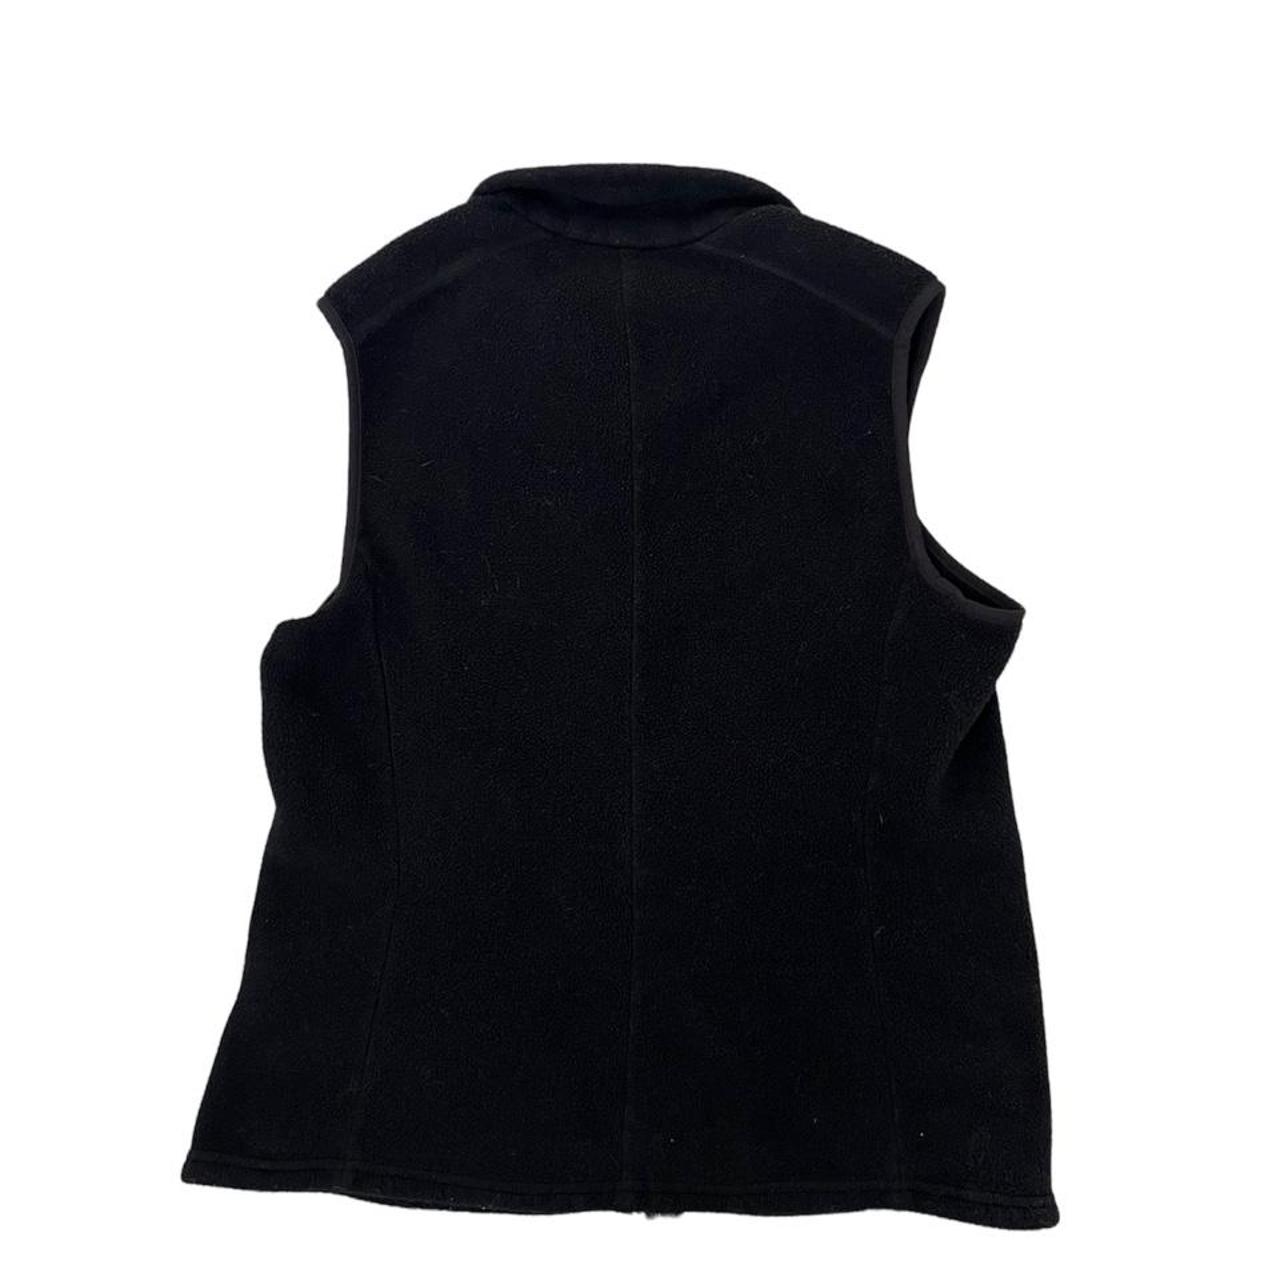 Patagonia vintage synchilla black vest size large... - Depop